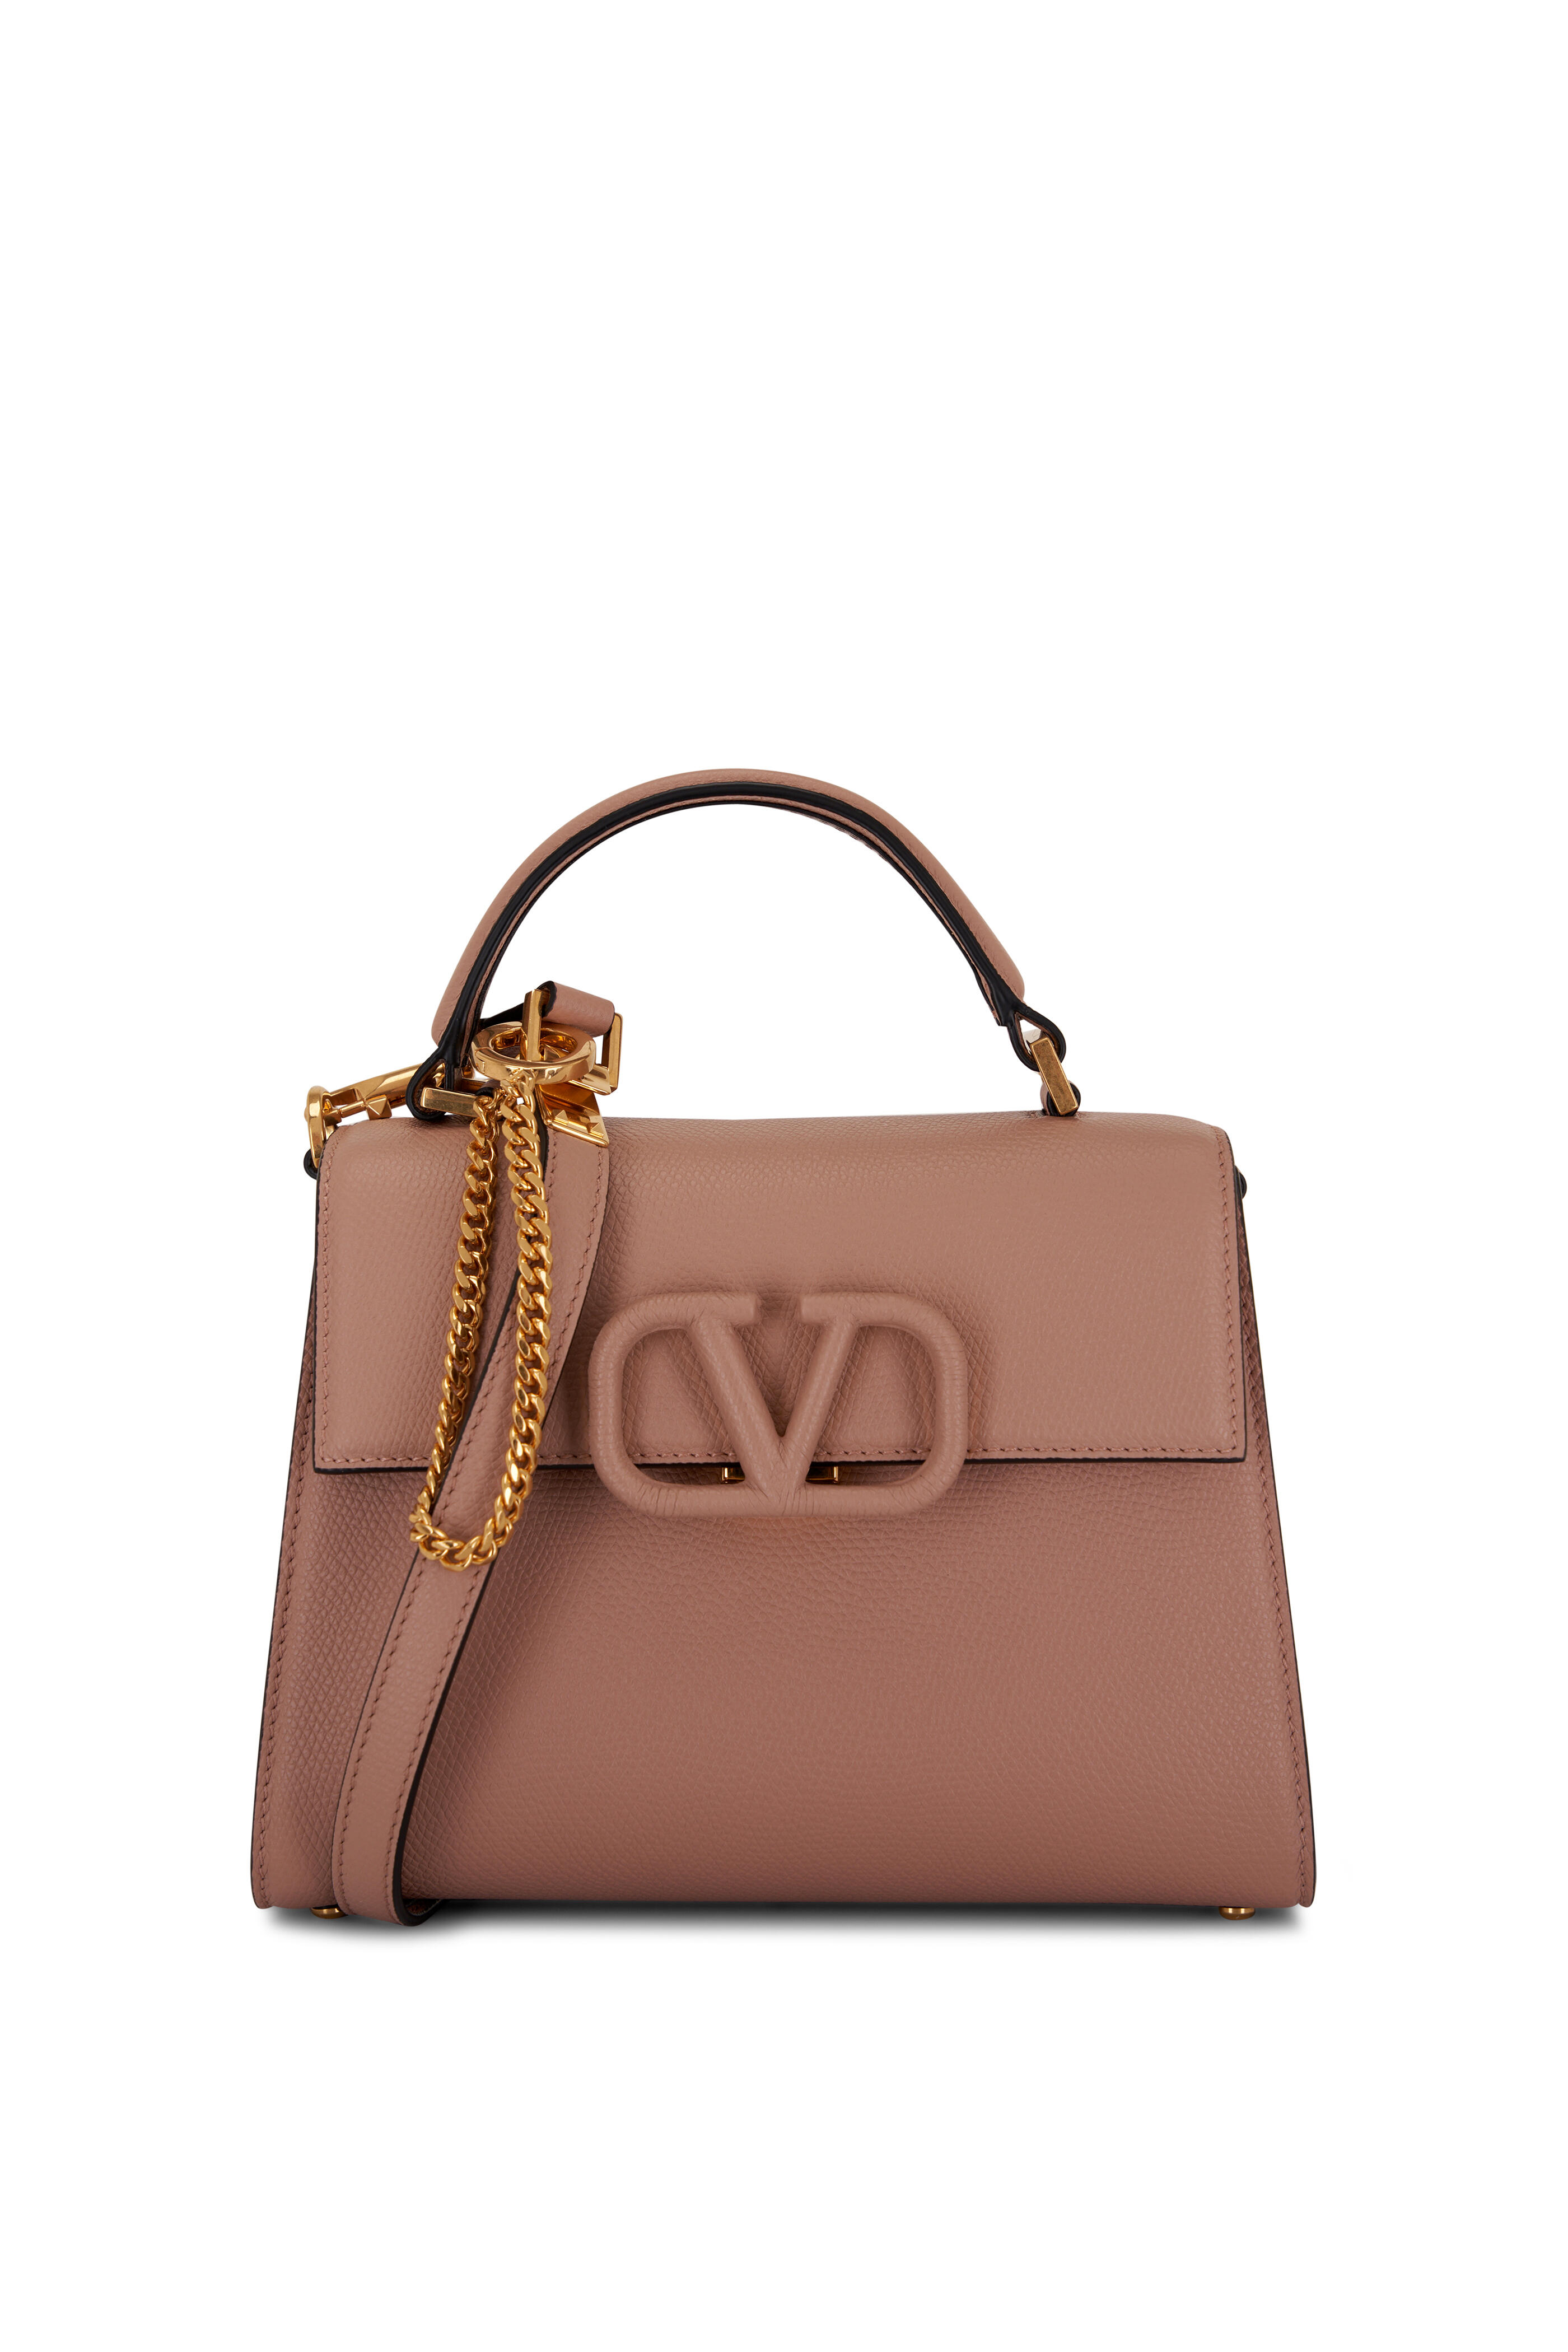 Valentino Small Vsling Handbag In Grainy Calfskin Black